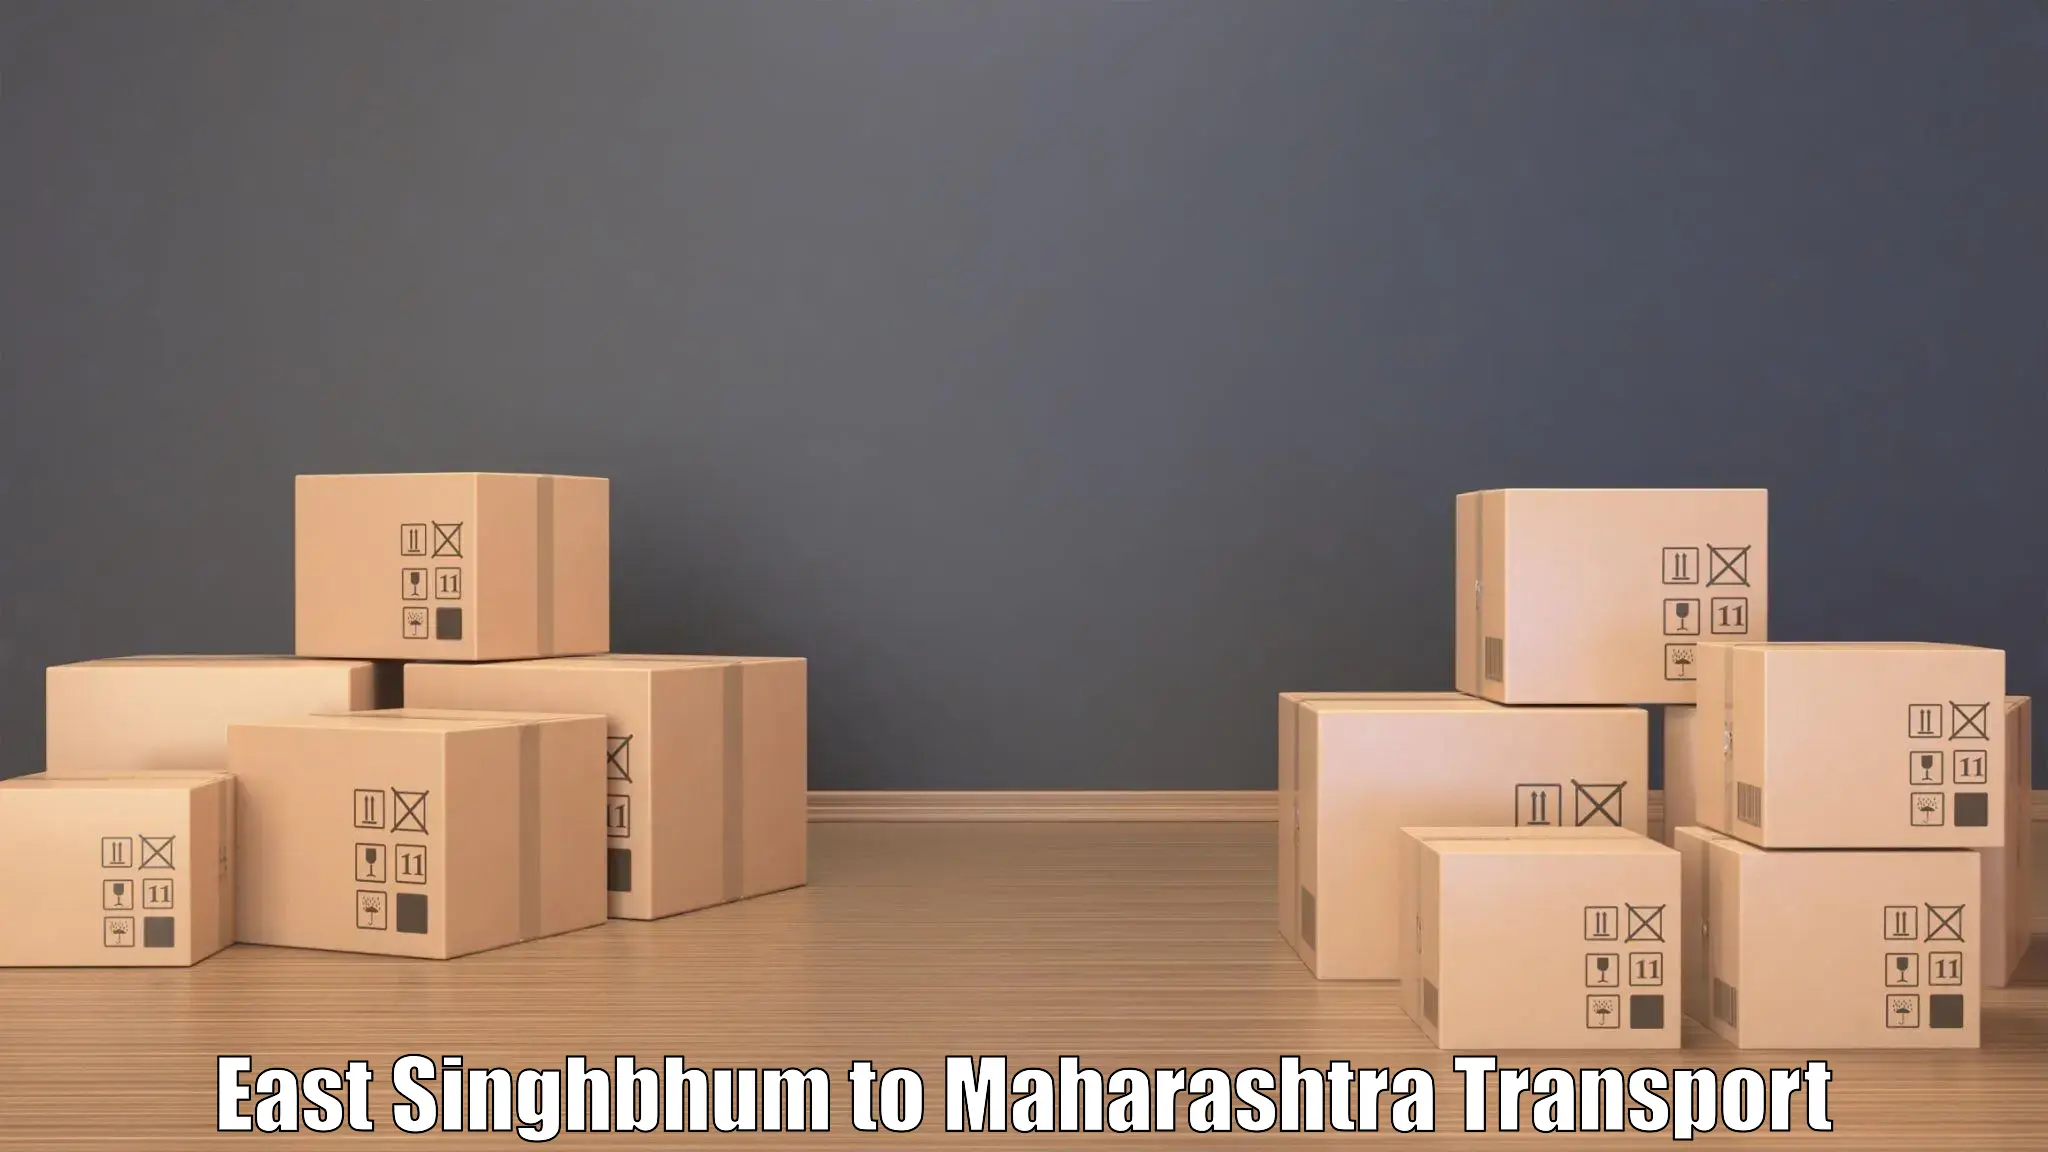 Shipping partner East Singhbhum to Parner